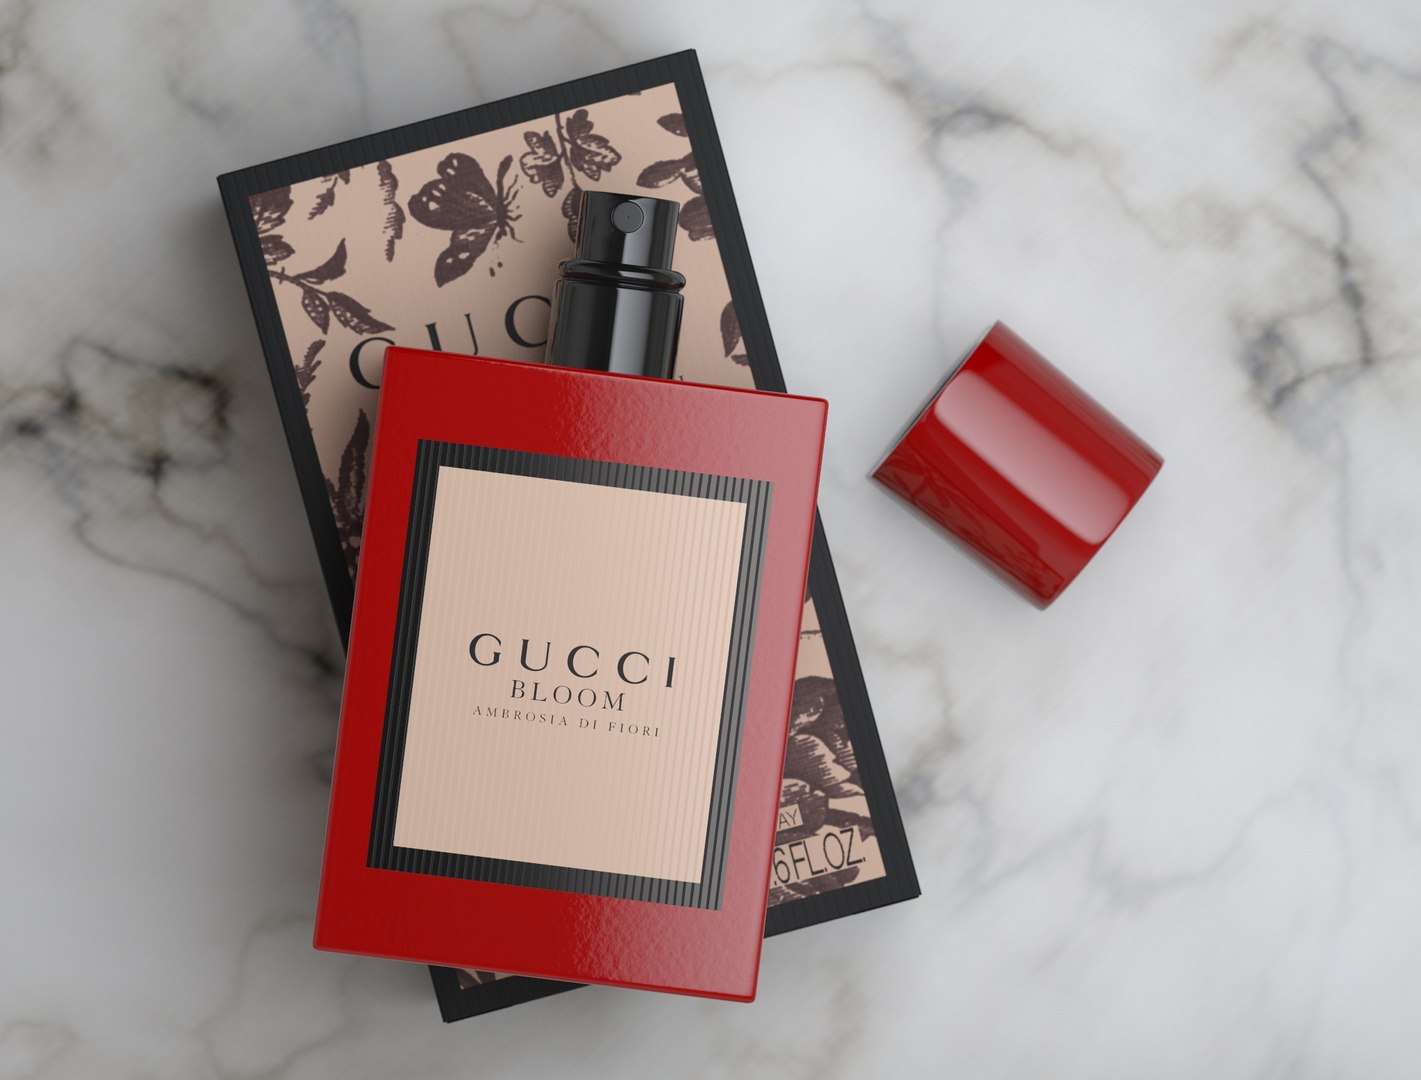 Gucci Bloom Ambrosia Di Fiori Perfume With Box 3D - TurboSquid 1742429